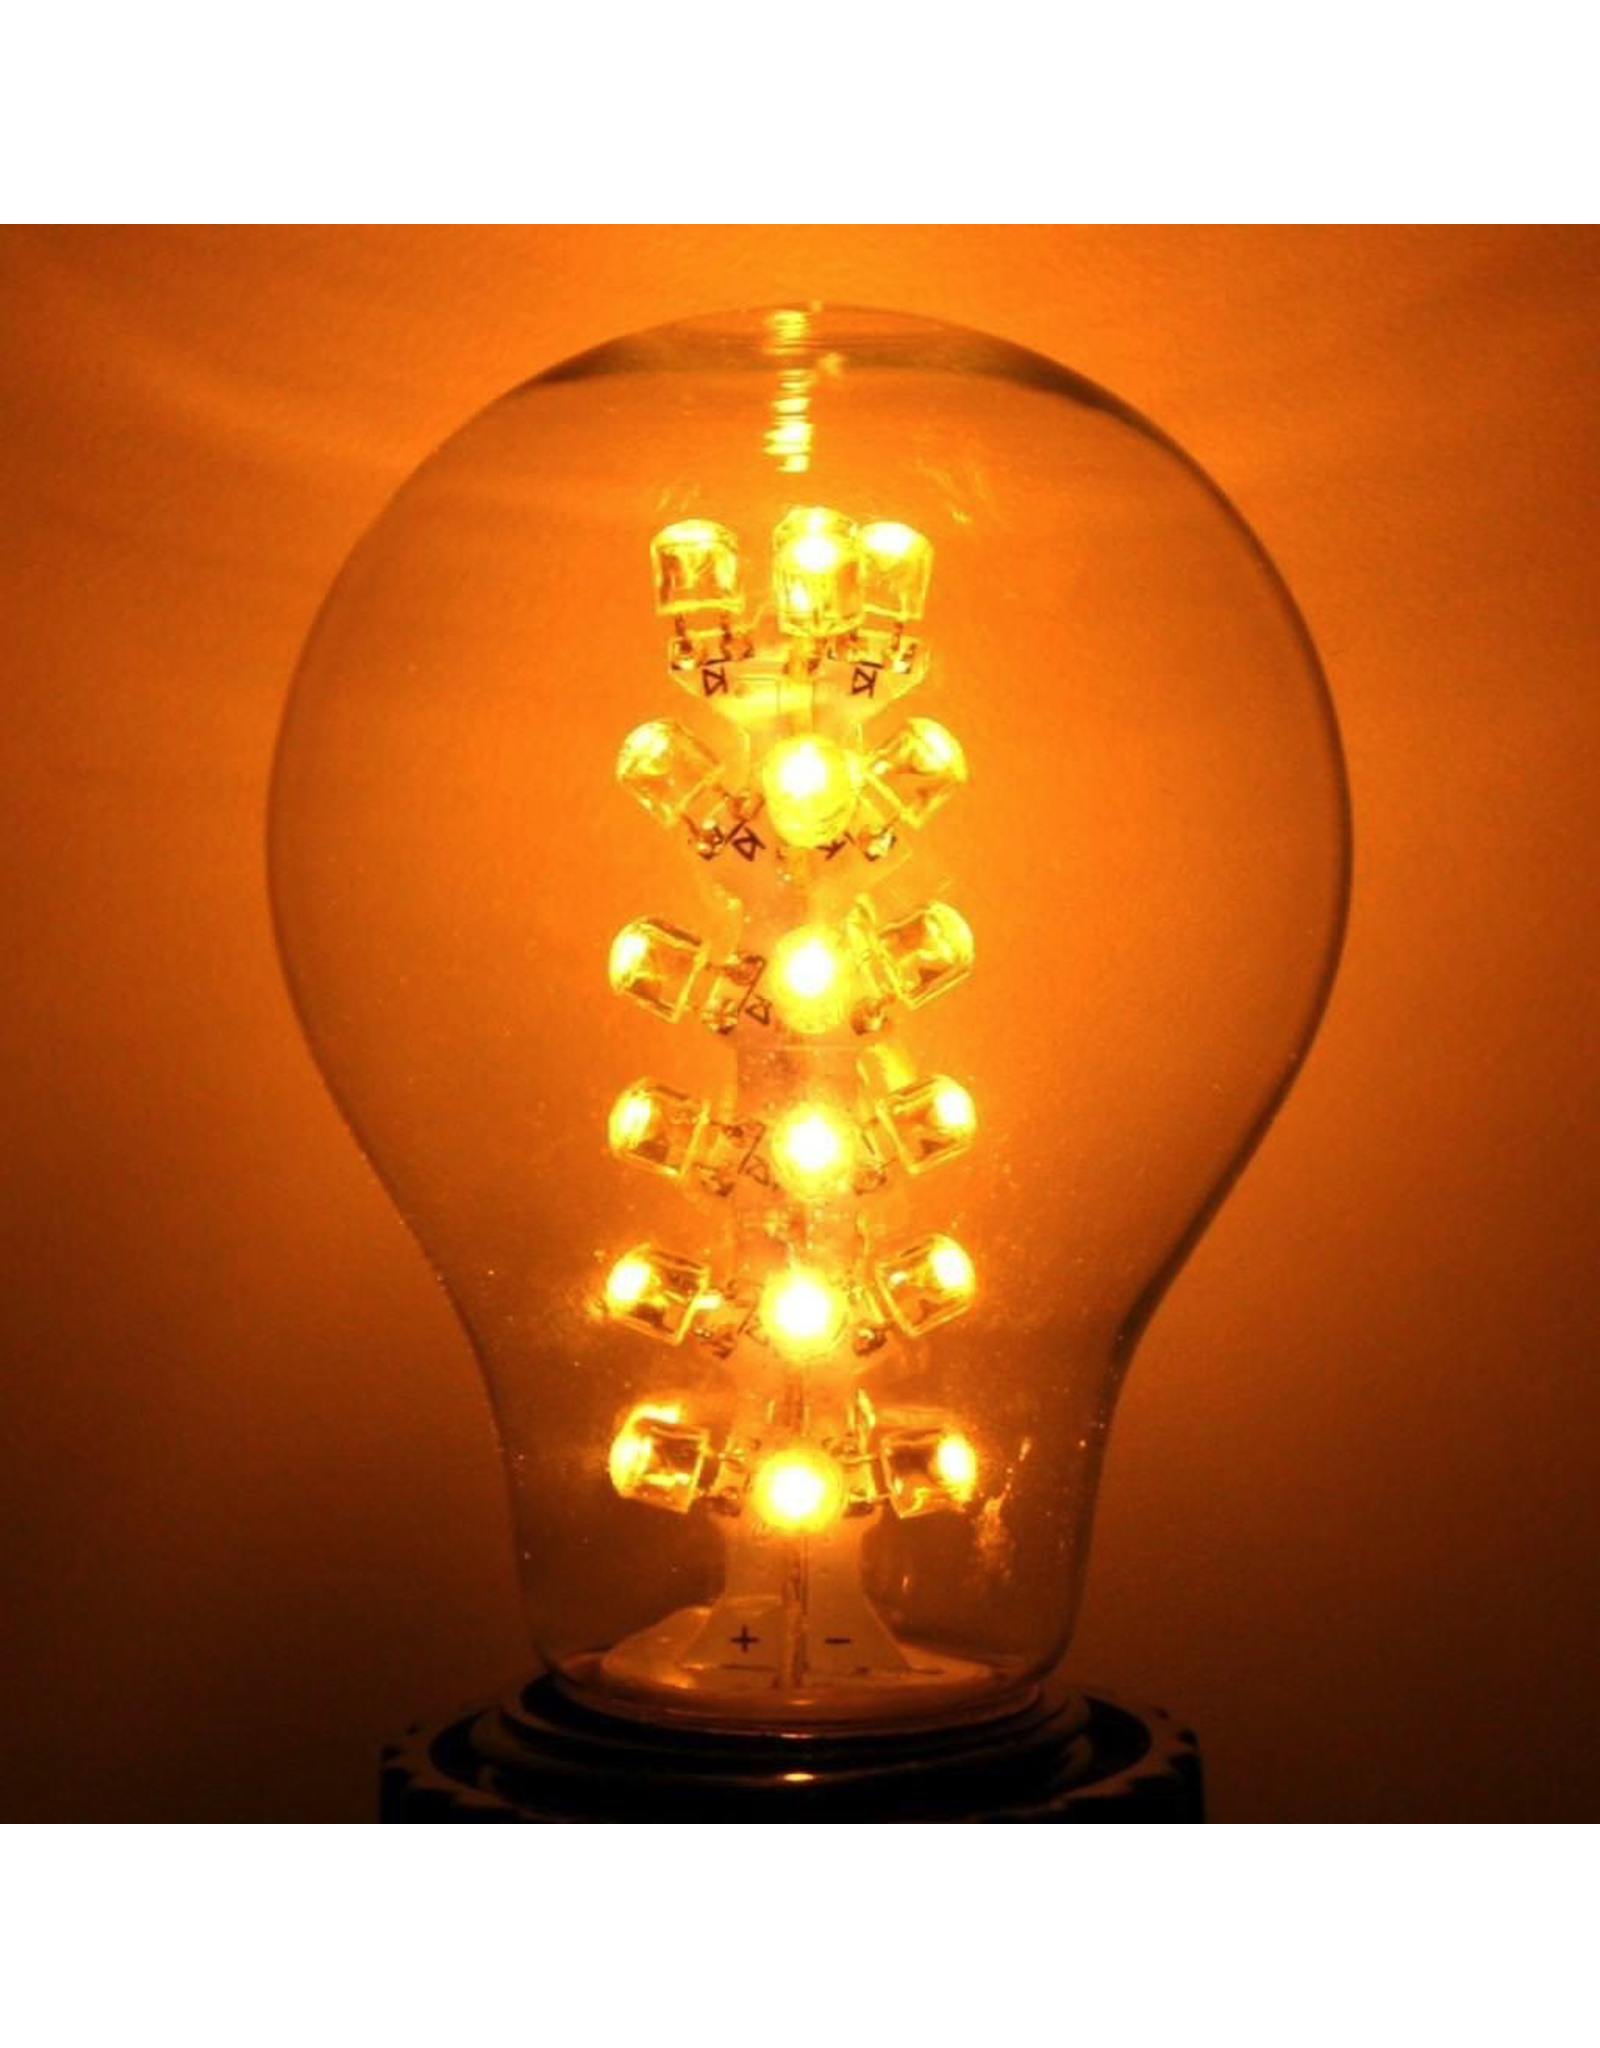 Cleveland Vintage Lighting Edison Style Light Bulb LED 1.7W E26 Base